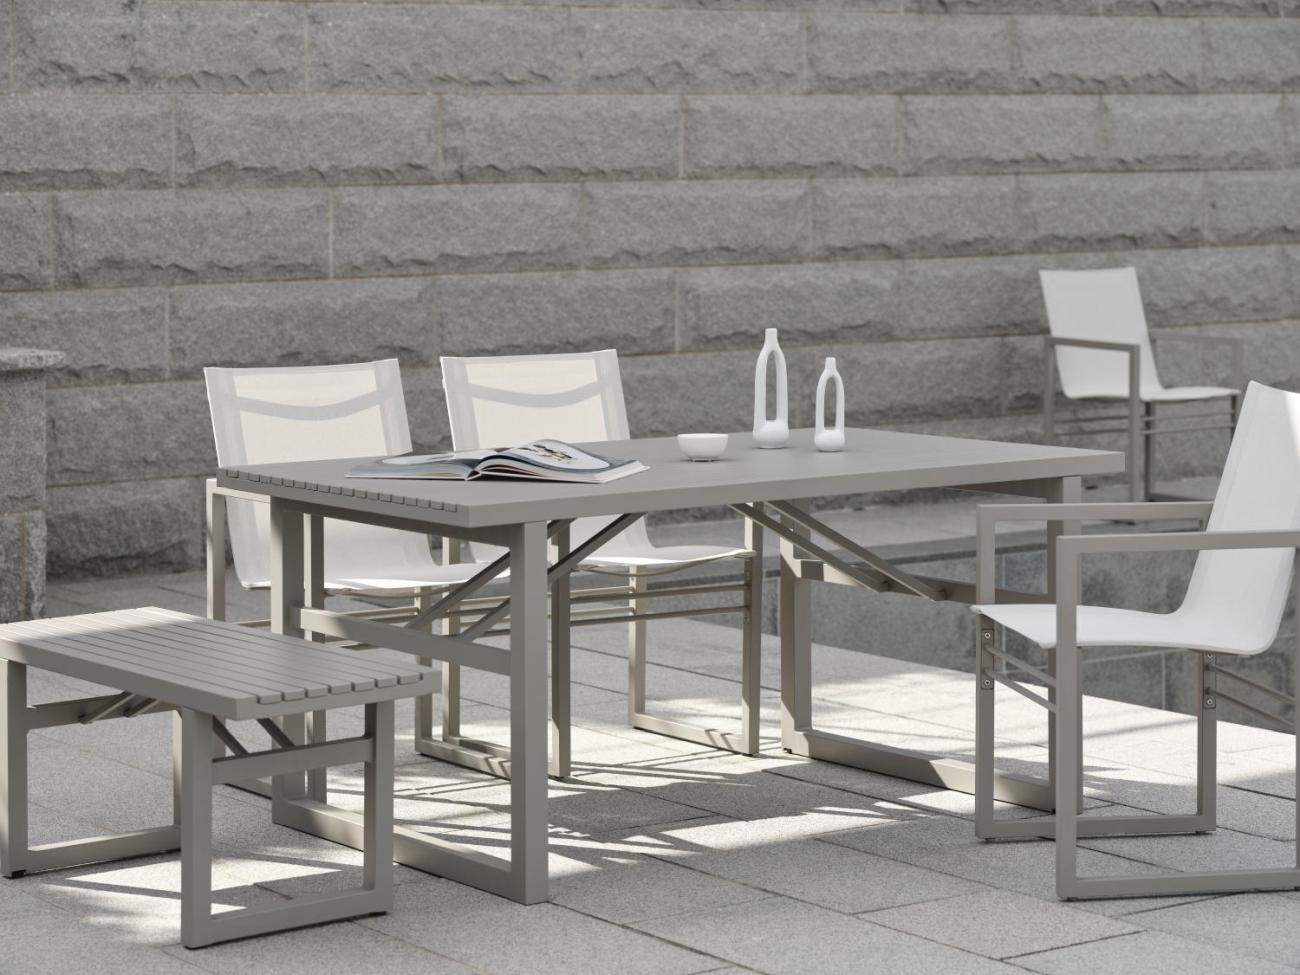 Der Gartenesstisch Vevi überzeugt mit seinem modernen Design. Gefertigt wurde die Tischplatte aus Metall, welche einen Kaki Farbton besitzt. Das Gestell ist auch aus Metall und hat eine Kaki Farbe. Der Tisch besitzt eine Länge von 160 cm.